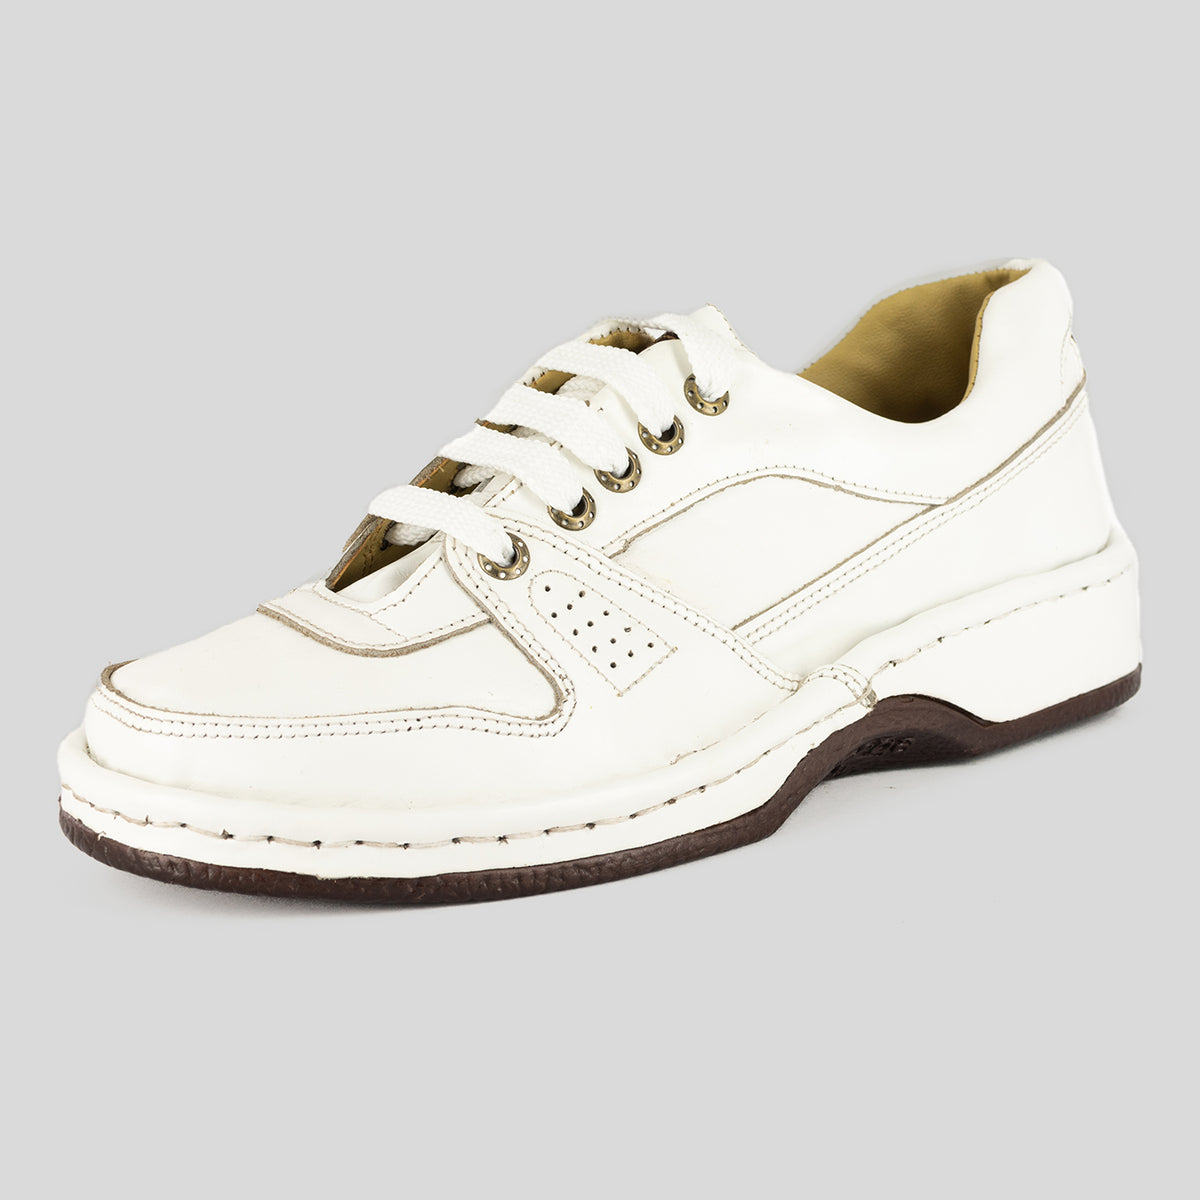 Melisizwe : Leather Shoe in White Soft Saddle